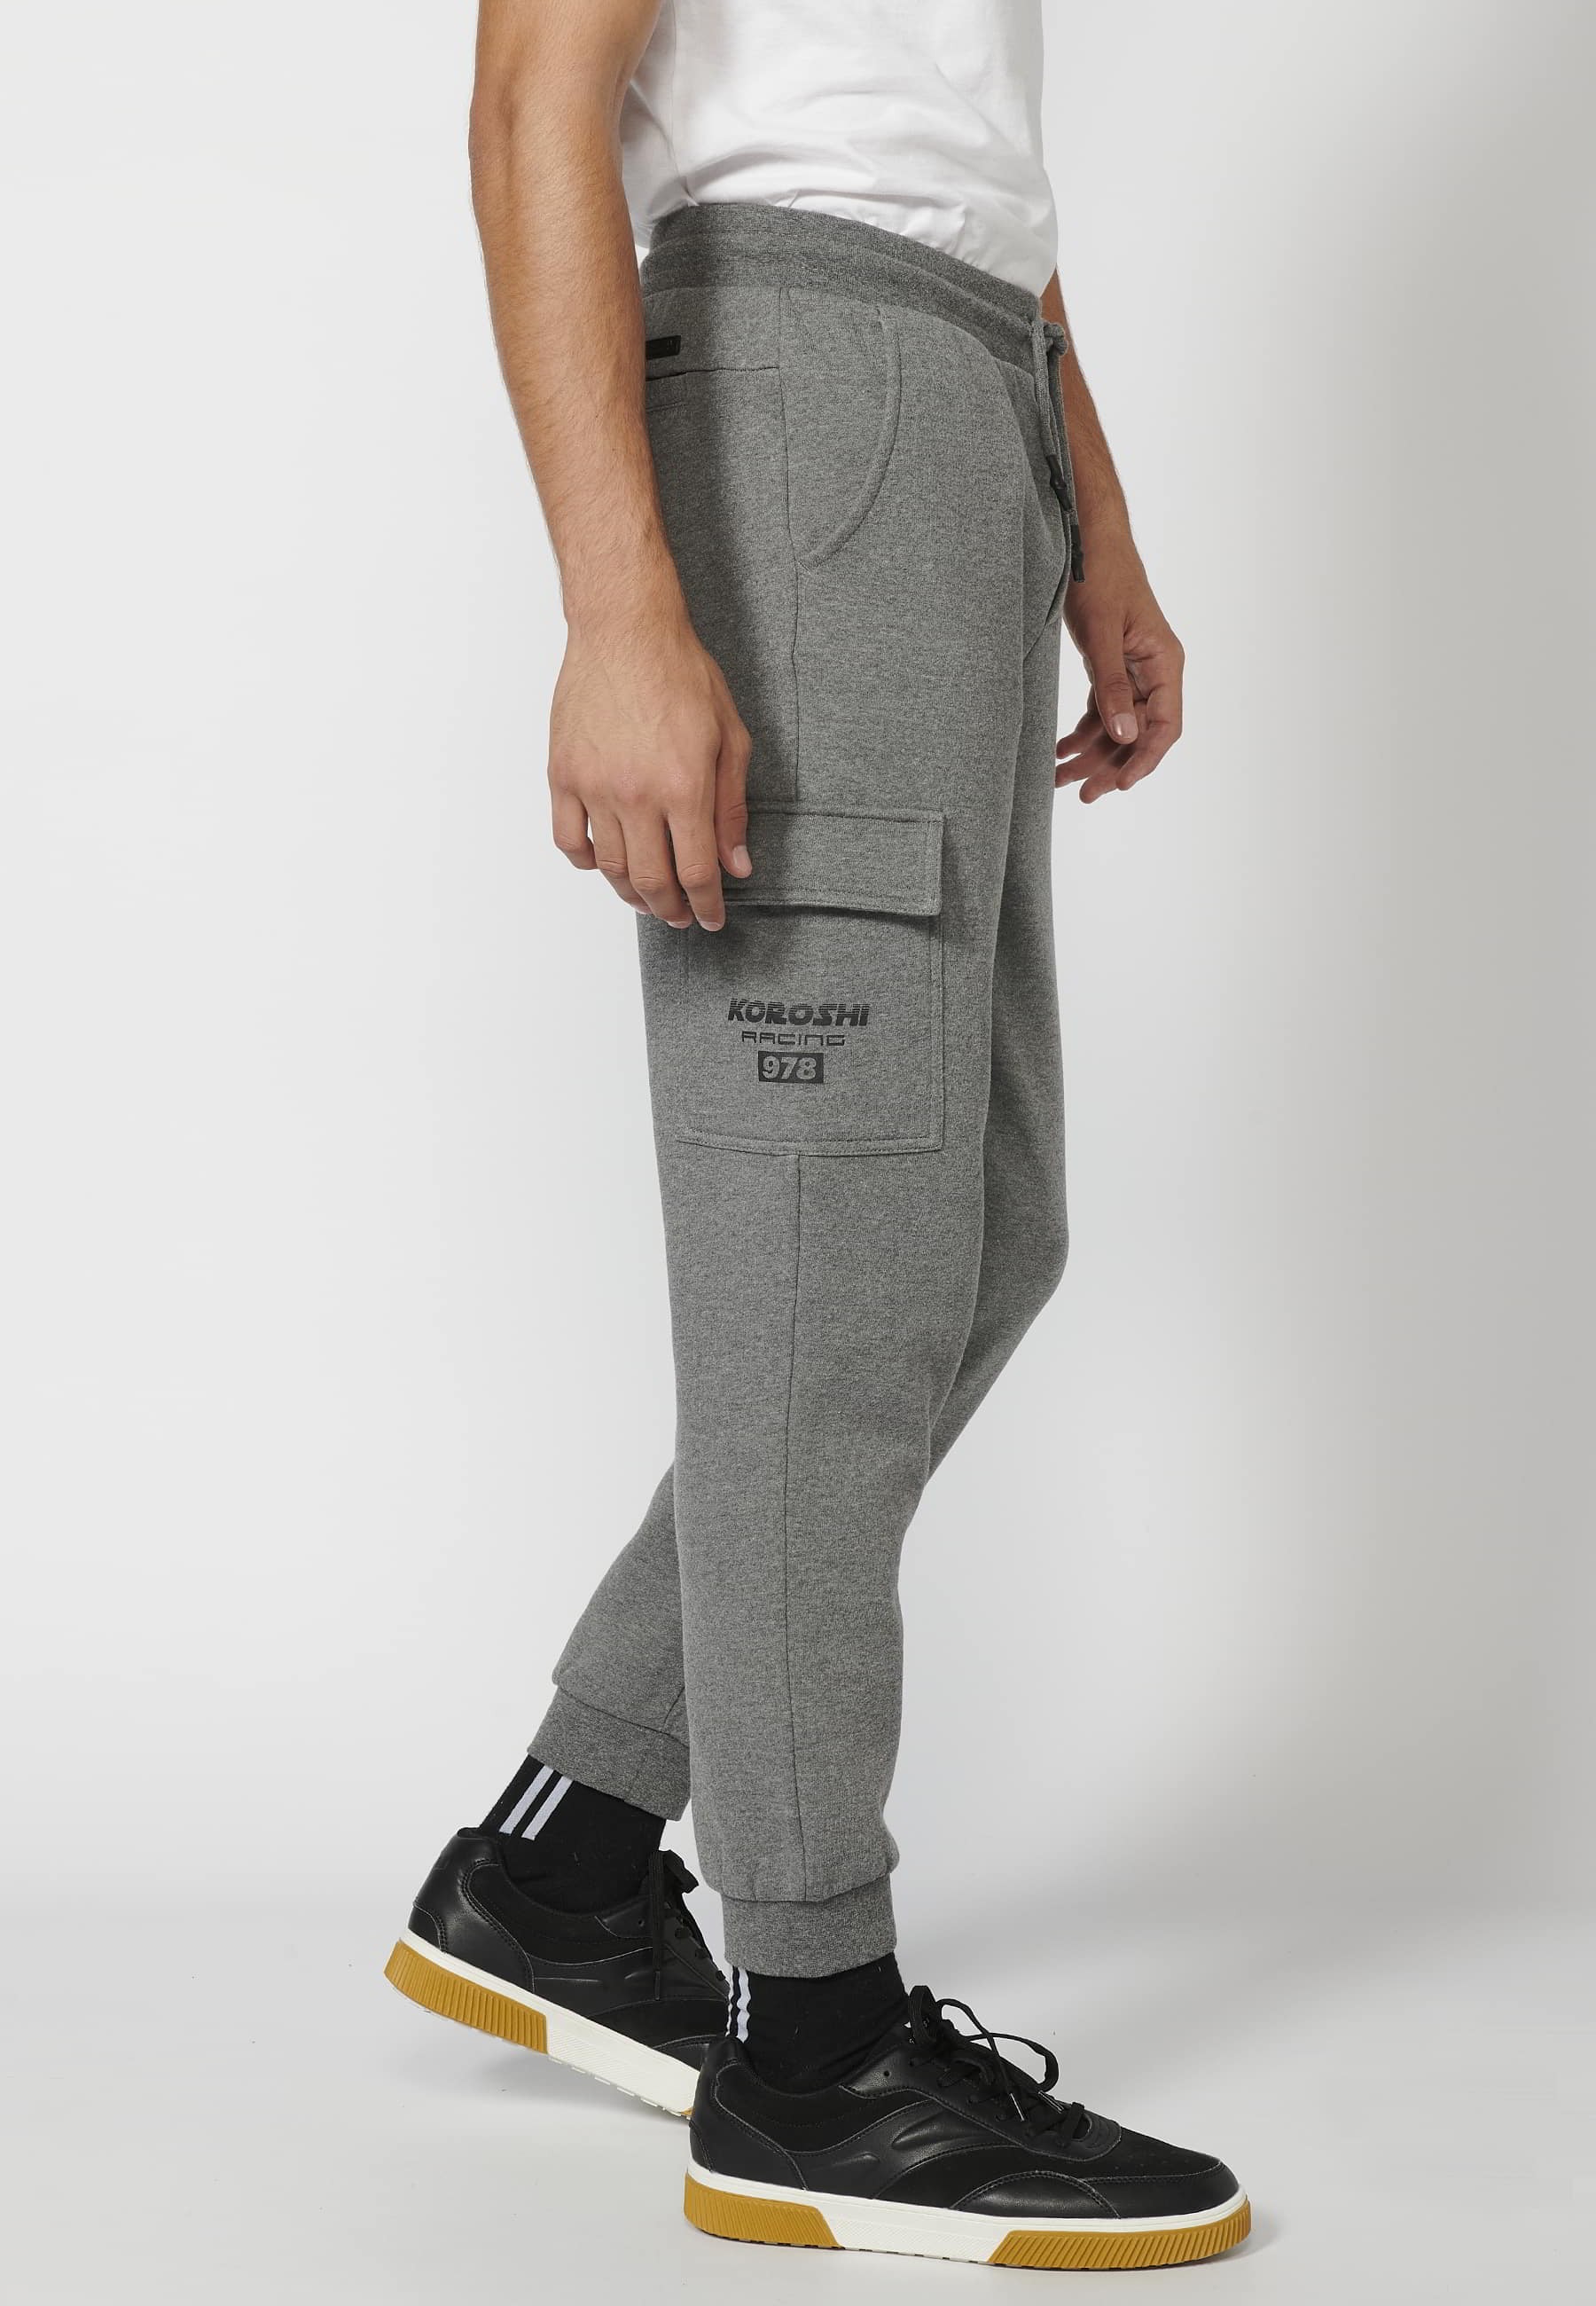 Pantalon de jogging long avec taille élastique réglable, poche cargo, couleur Gris pour Homme